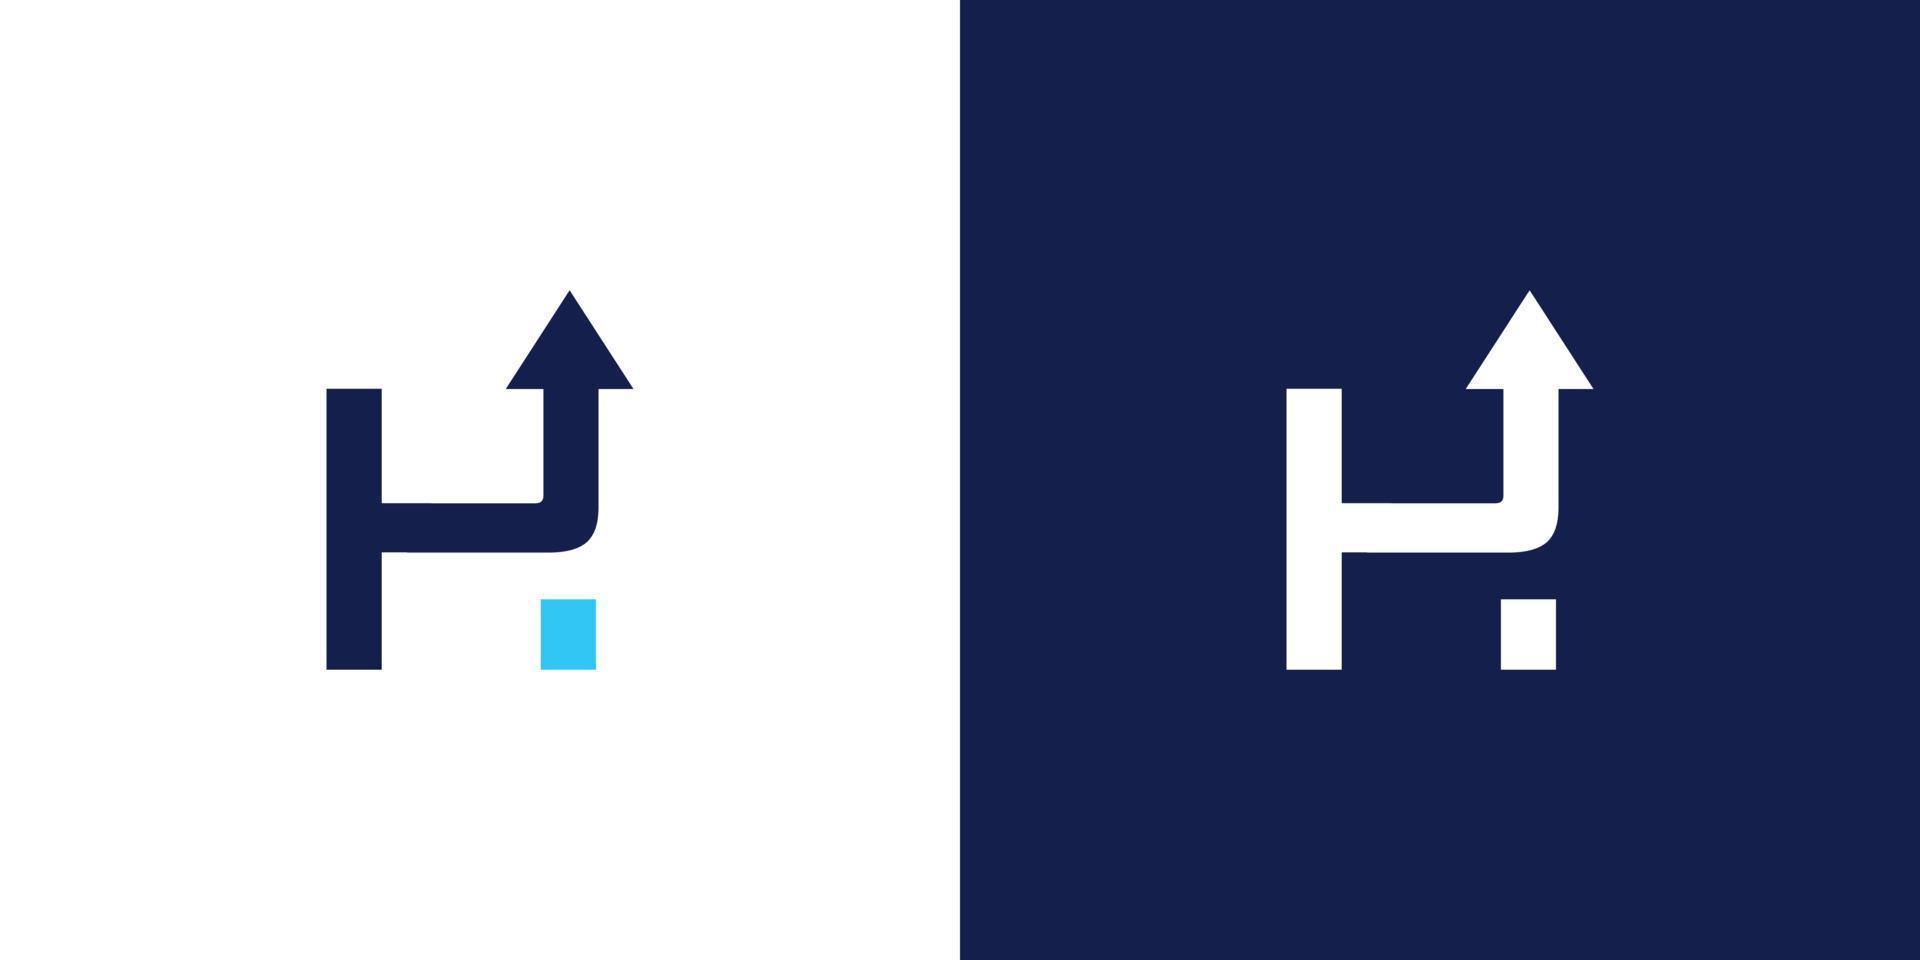 création de logo de direction initiale lettre h unique et attrayante vecteur